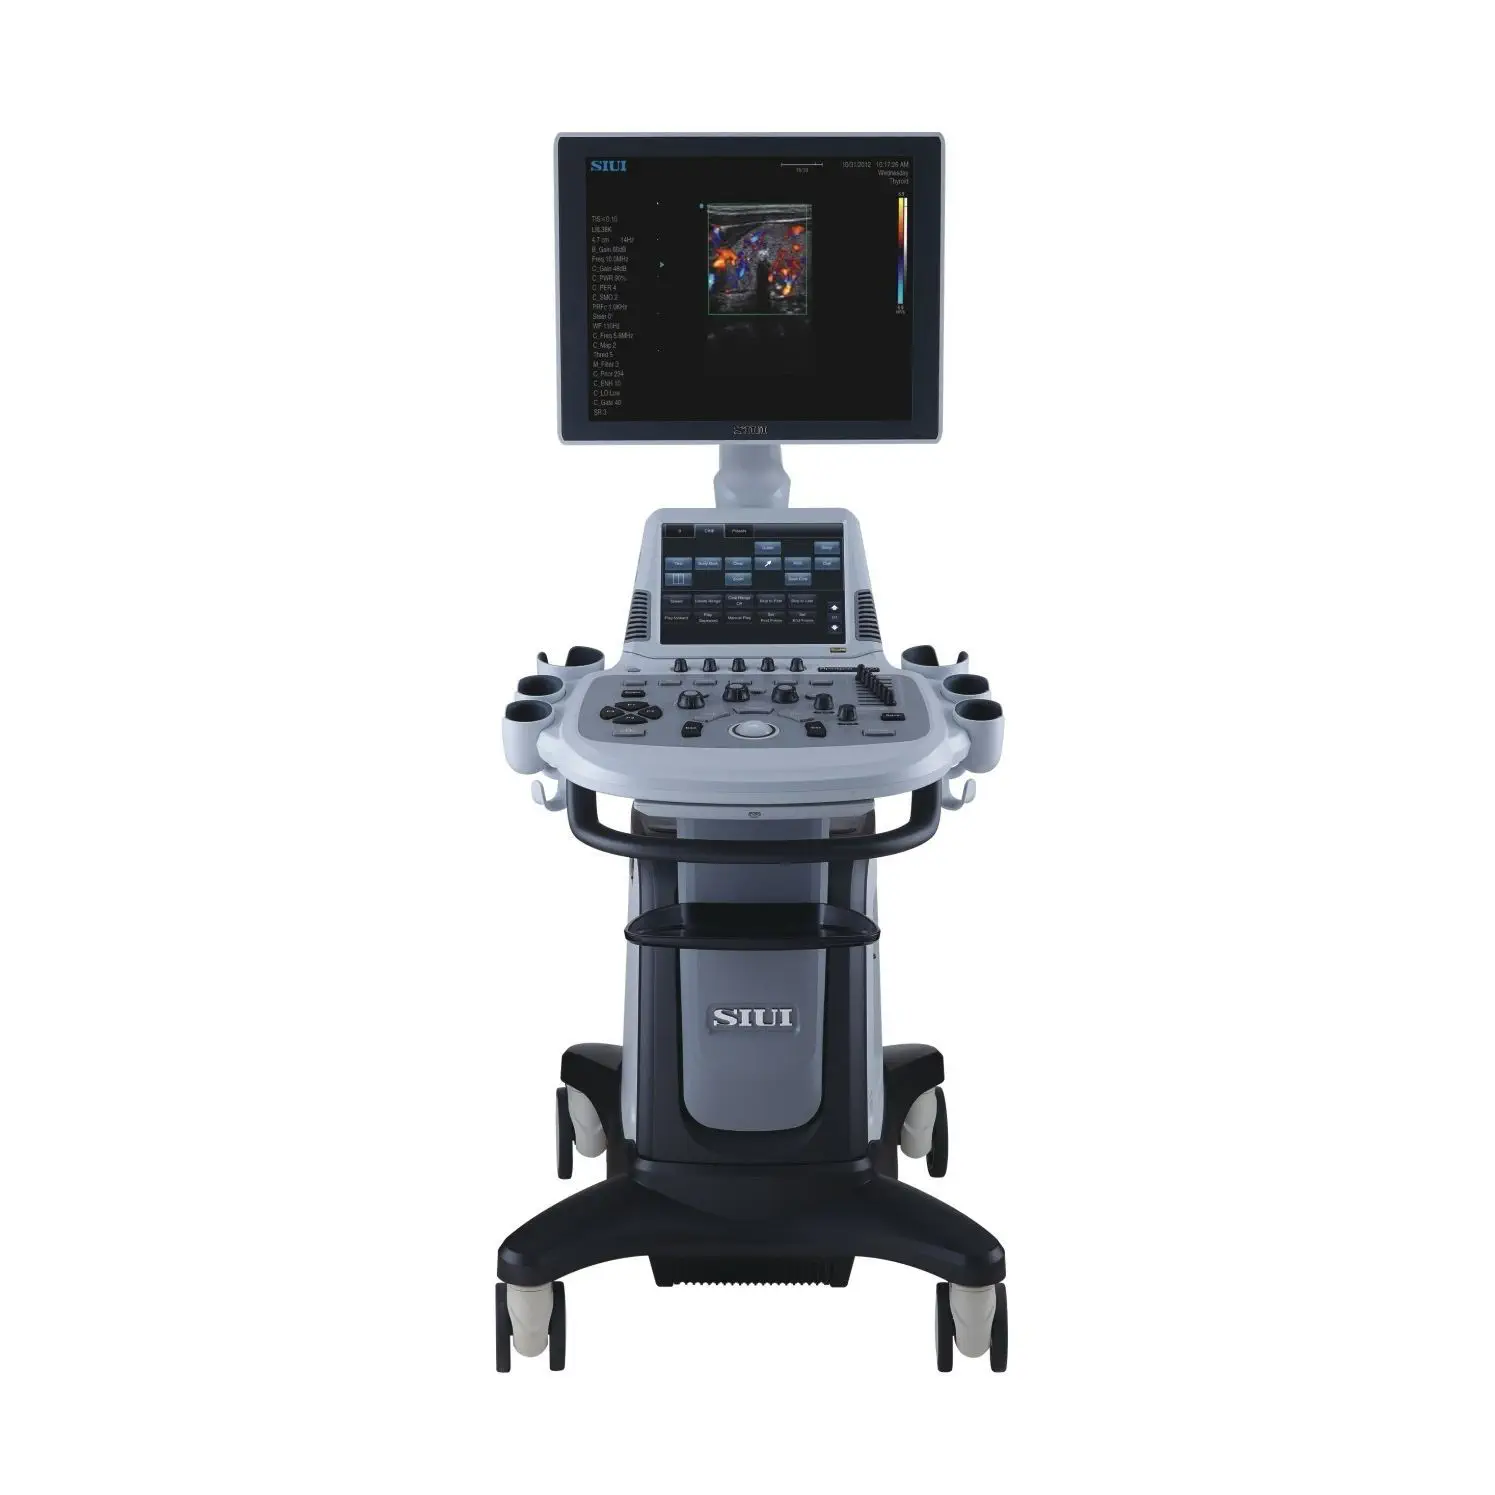 เครื่องอัลตราซาวด์ความละเอียดสูงชนิดสีสำหรับสัตว์ On-platform veterinary ultrasound system Apogee 5300V Neo  SIUI